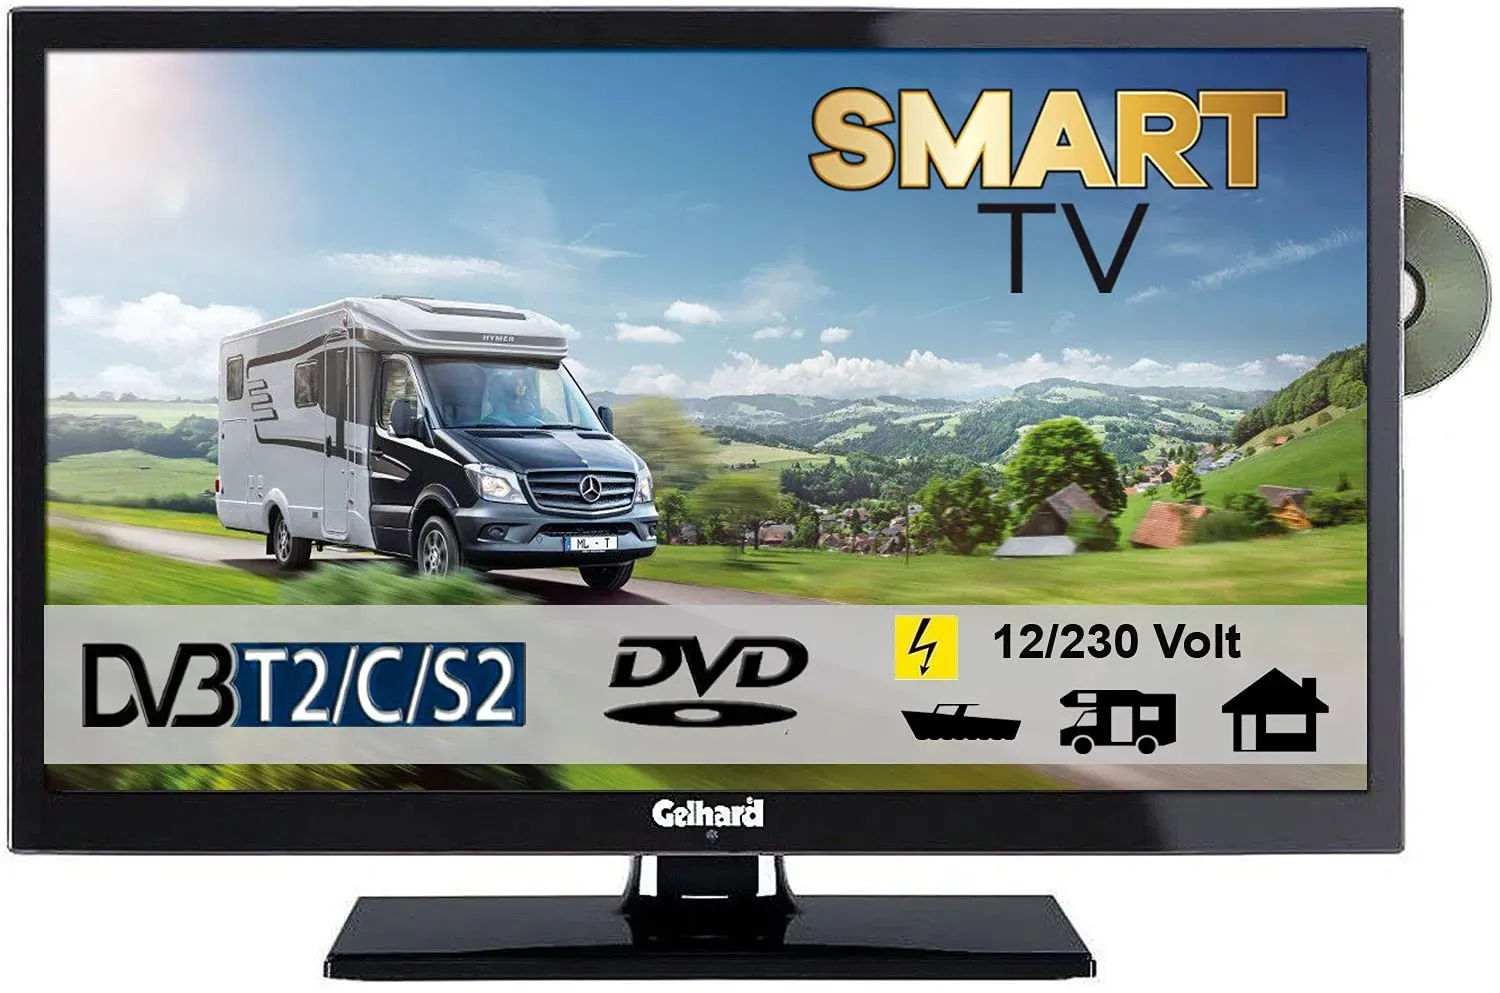 Gelhard GTV2452I Smart TV 24 Zoll DVB/S/S2/T2/C, DVD, USB, 12V 230 Volt WLAN